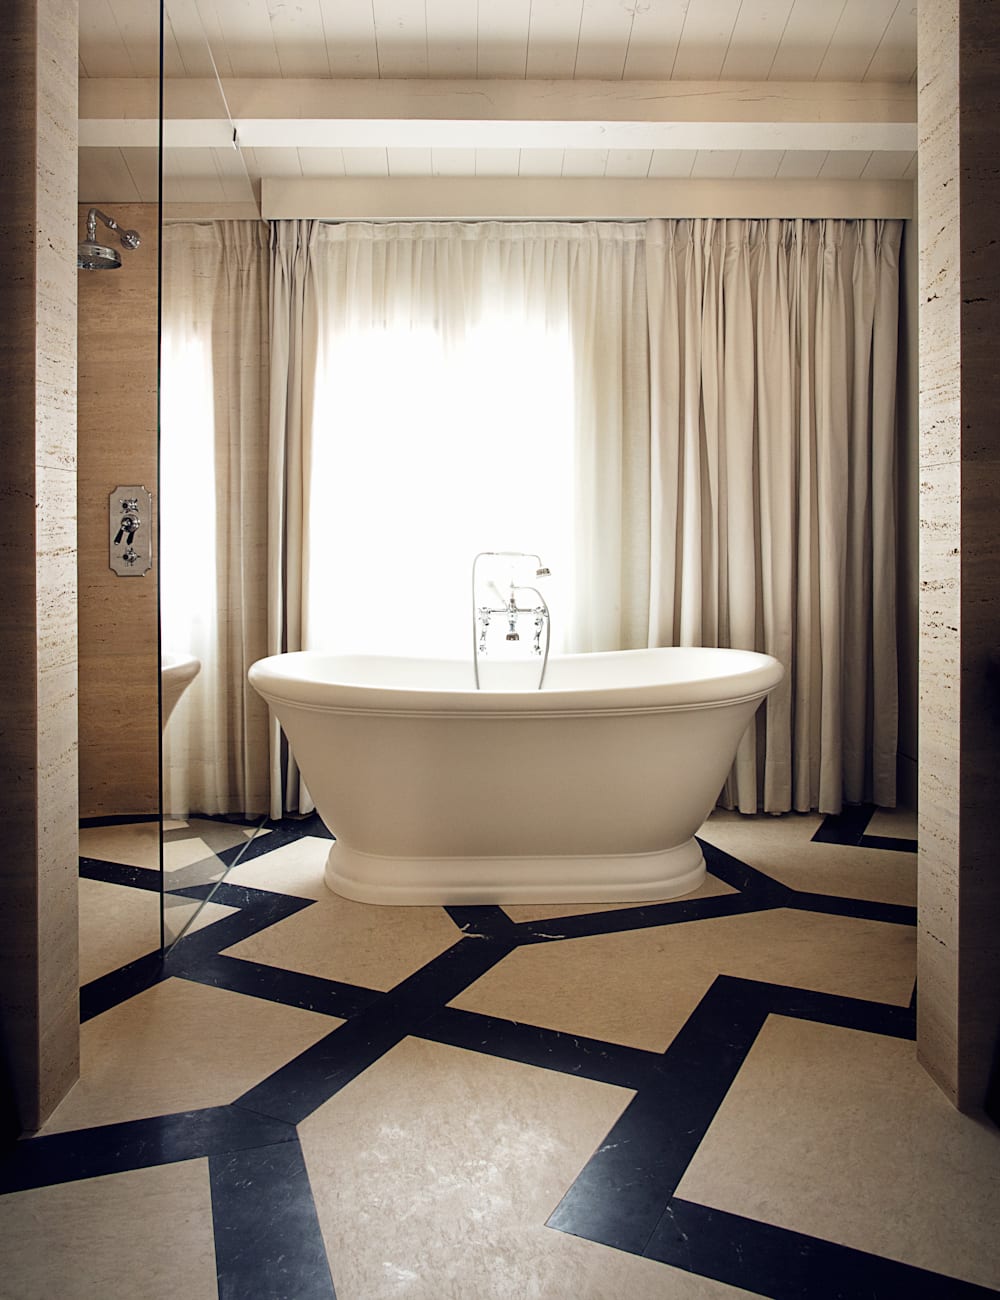 Bathtub at Palazzo Cristo hotel, Venice